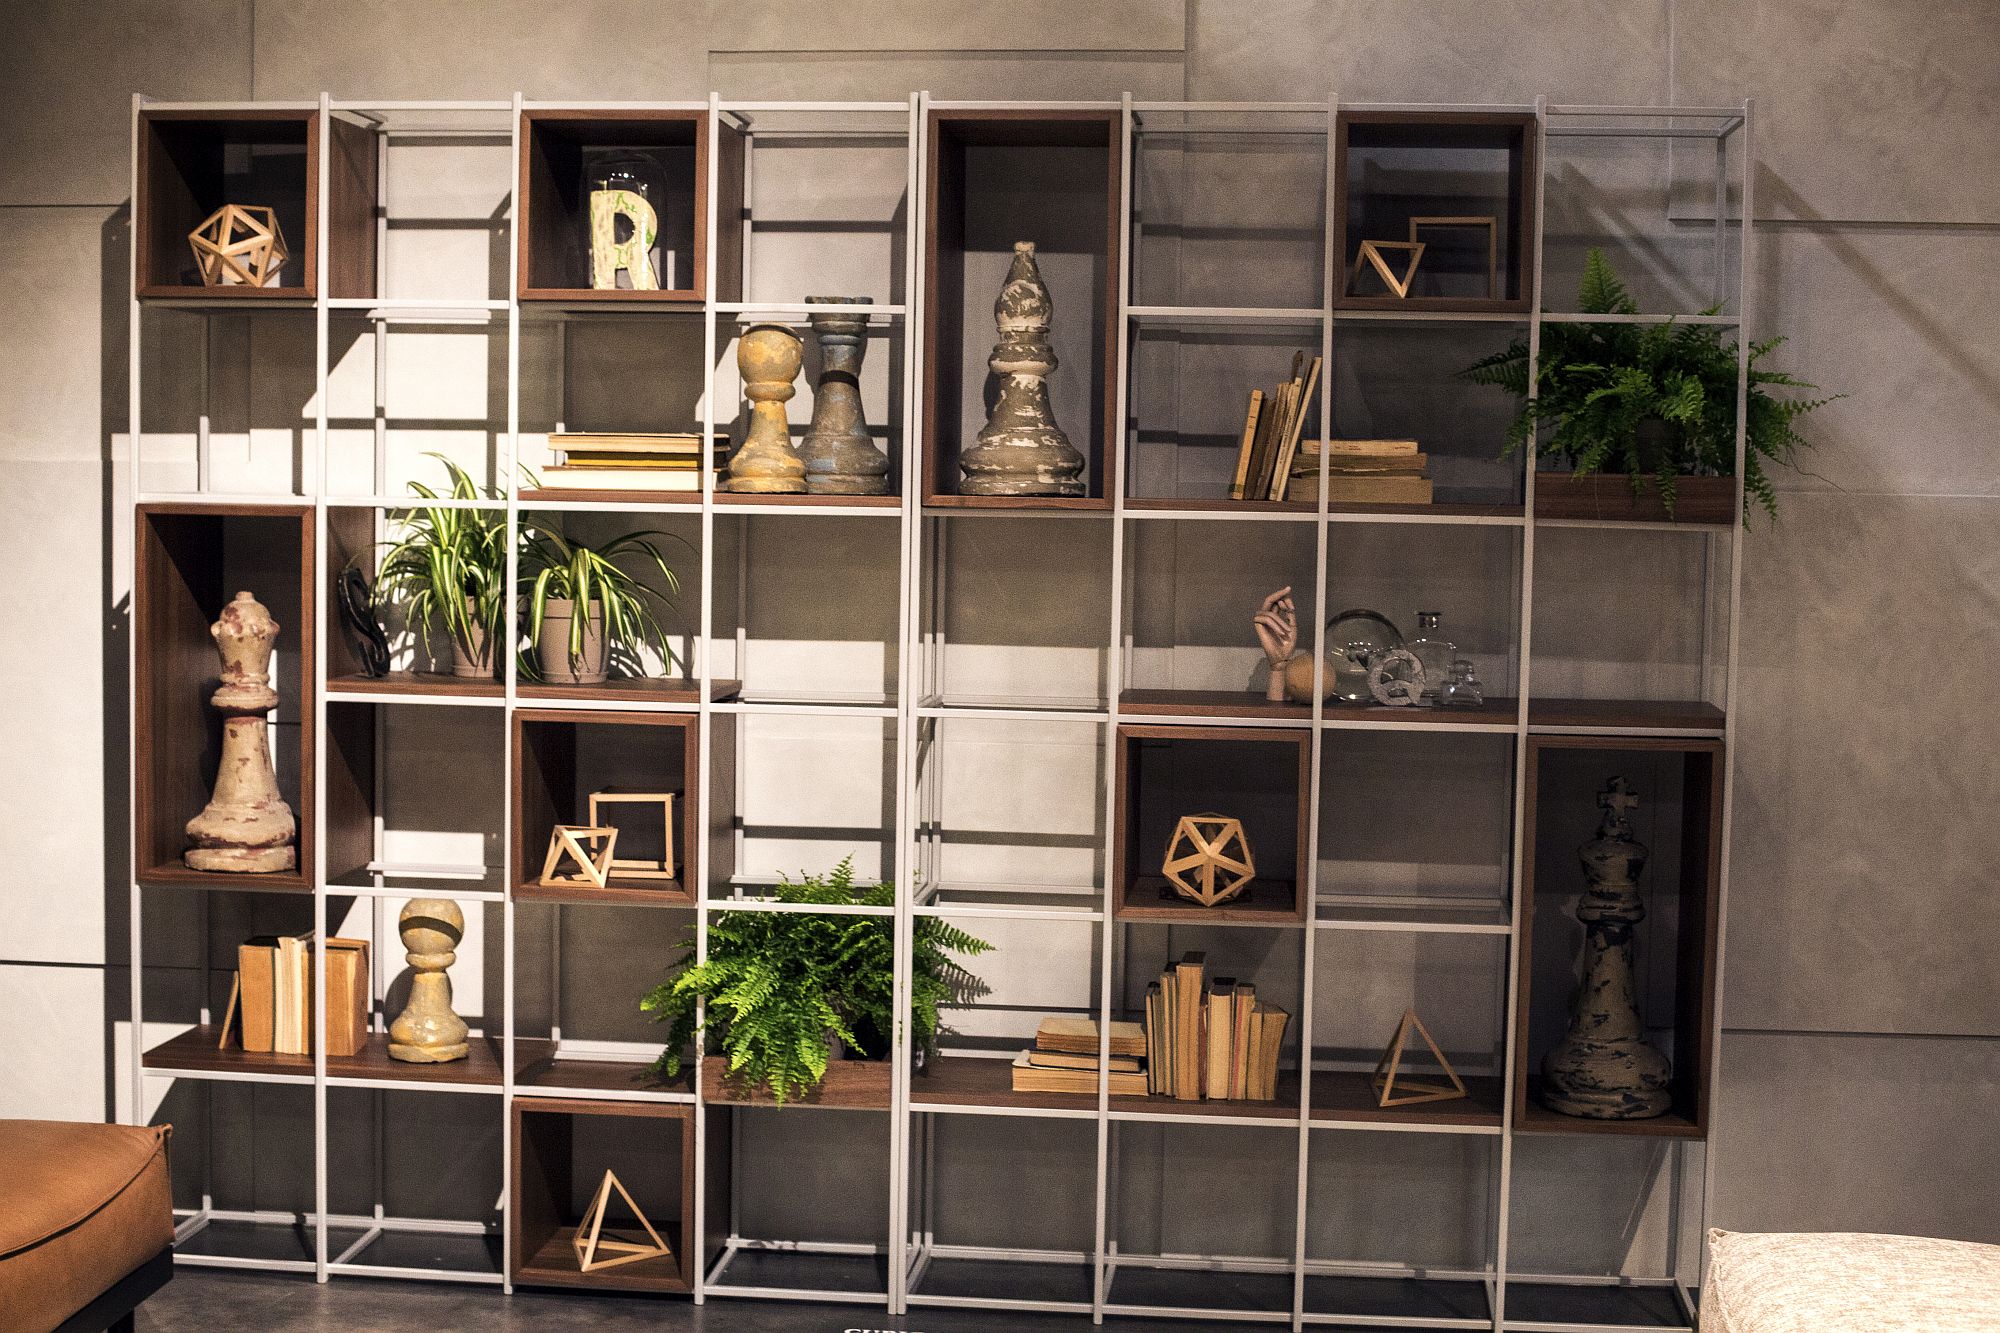 11 estantes de madera abiertos que traen modularidad y facilidad de decoración